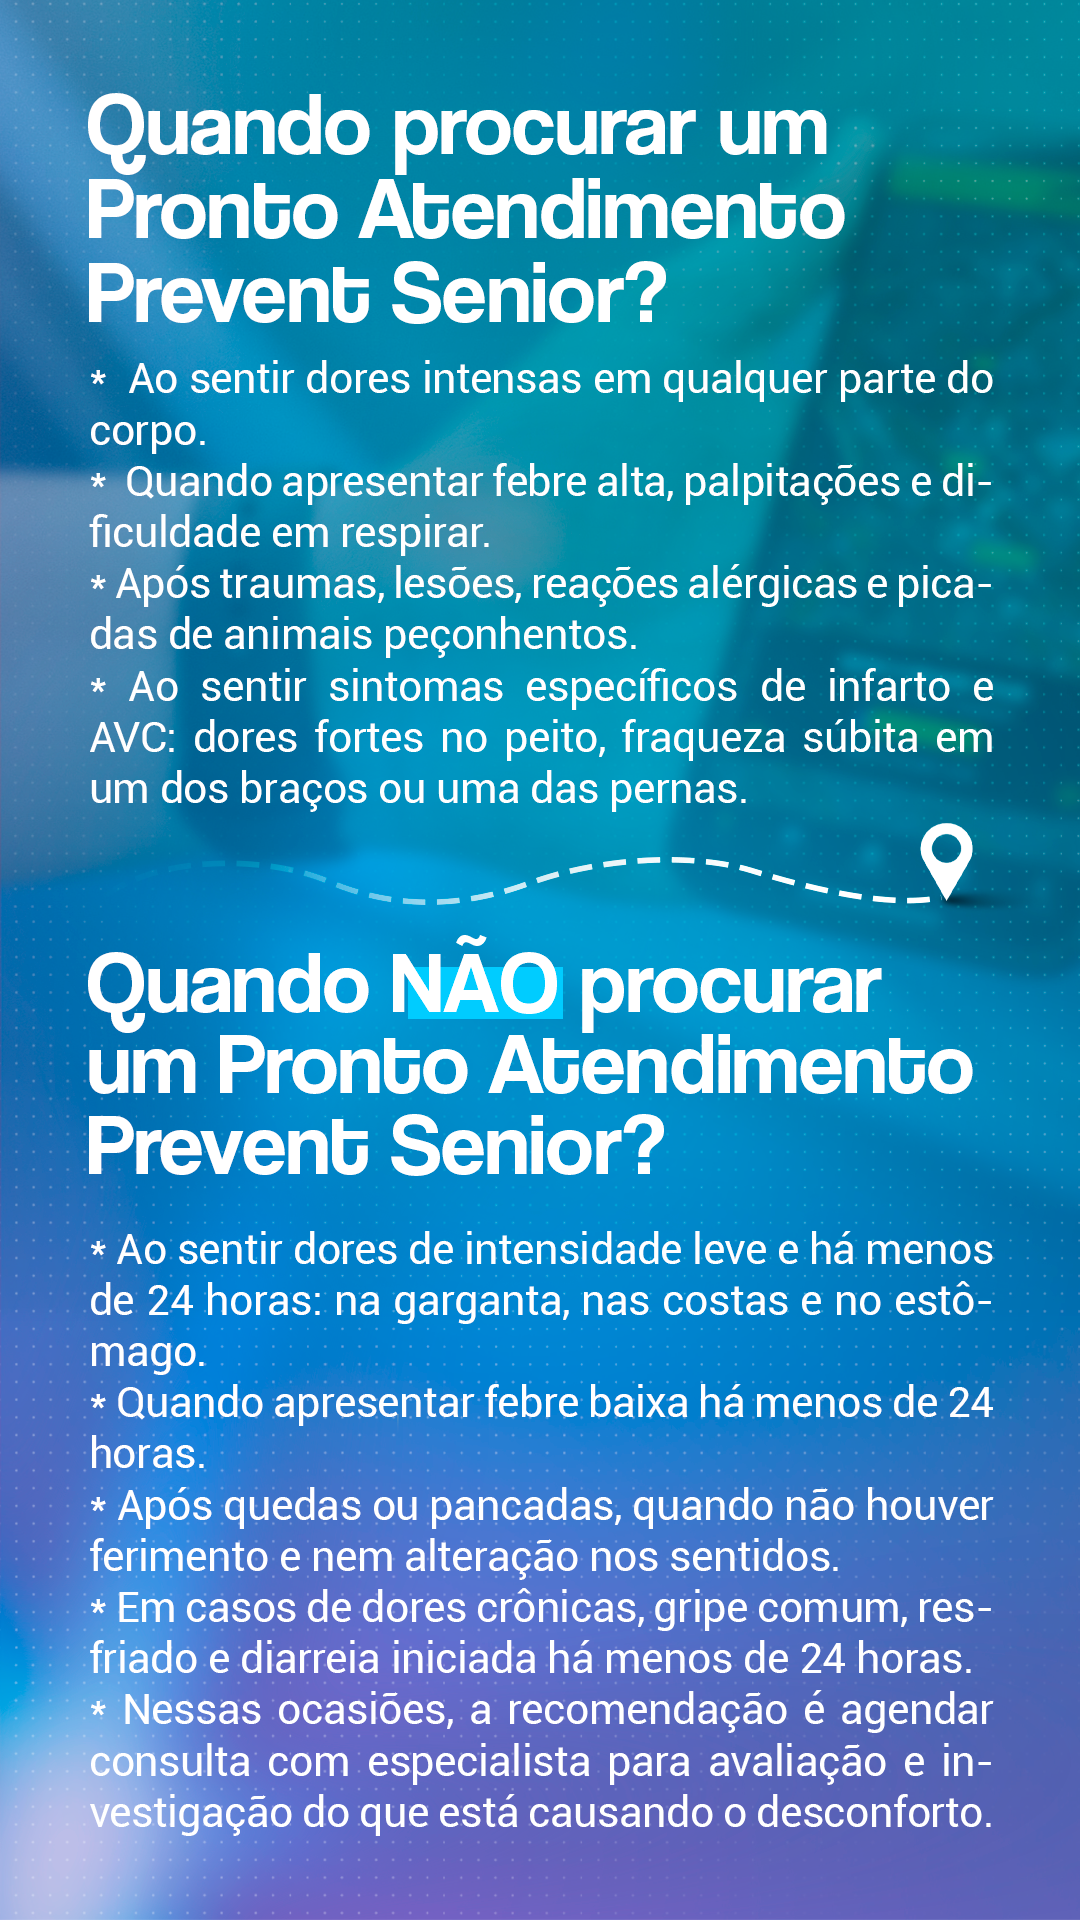 Rede Credenciada Rio de Janeiro – Prevent Sênior Saúde